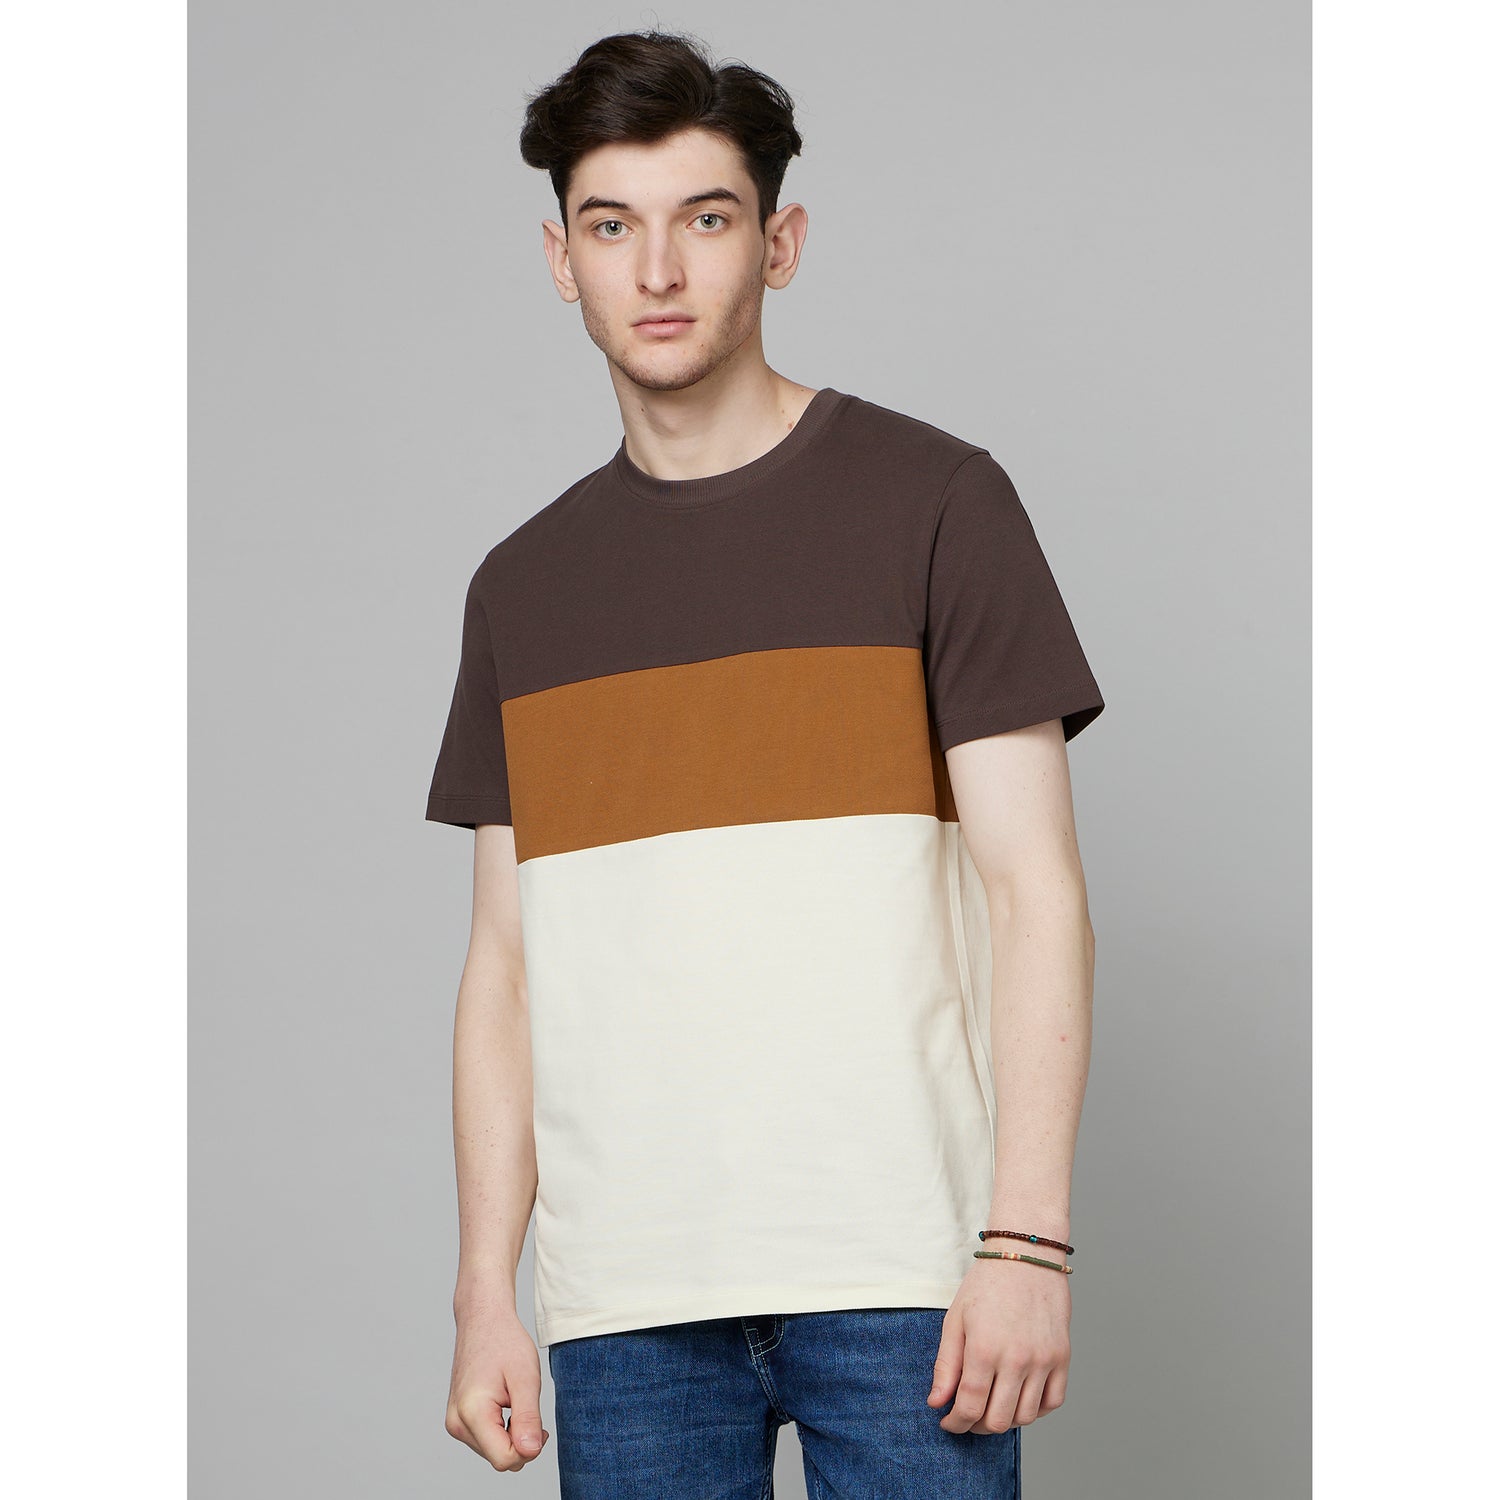 Brown Colourblocked Cotton T-shirt (FEBLOCIN)